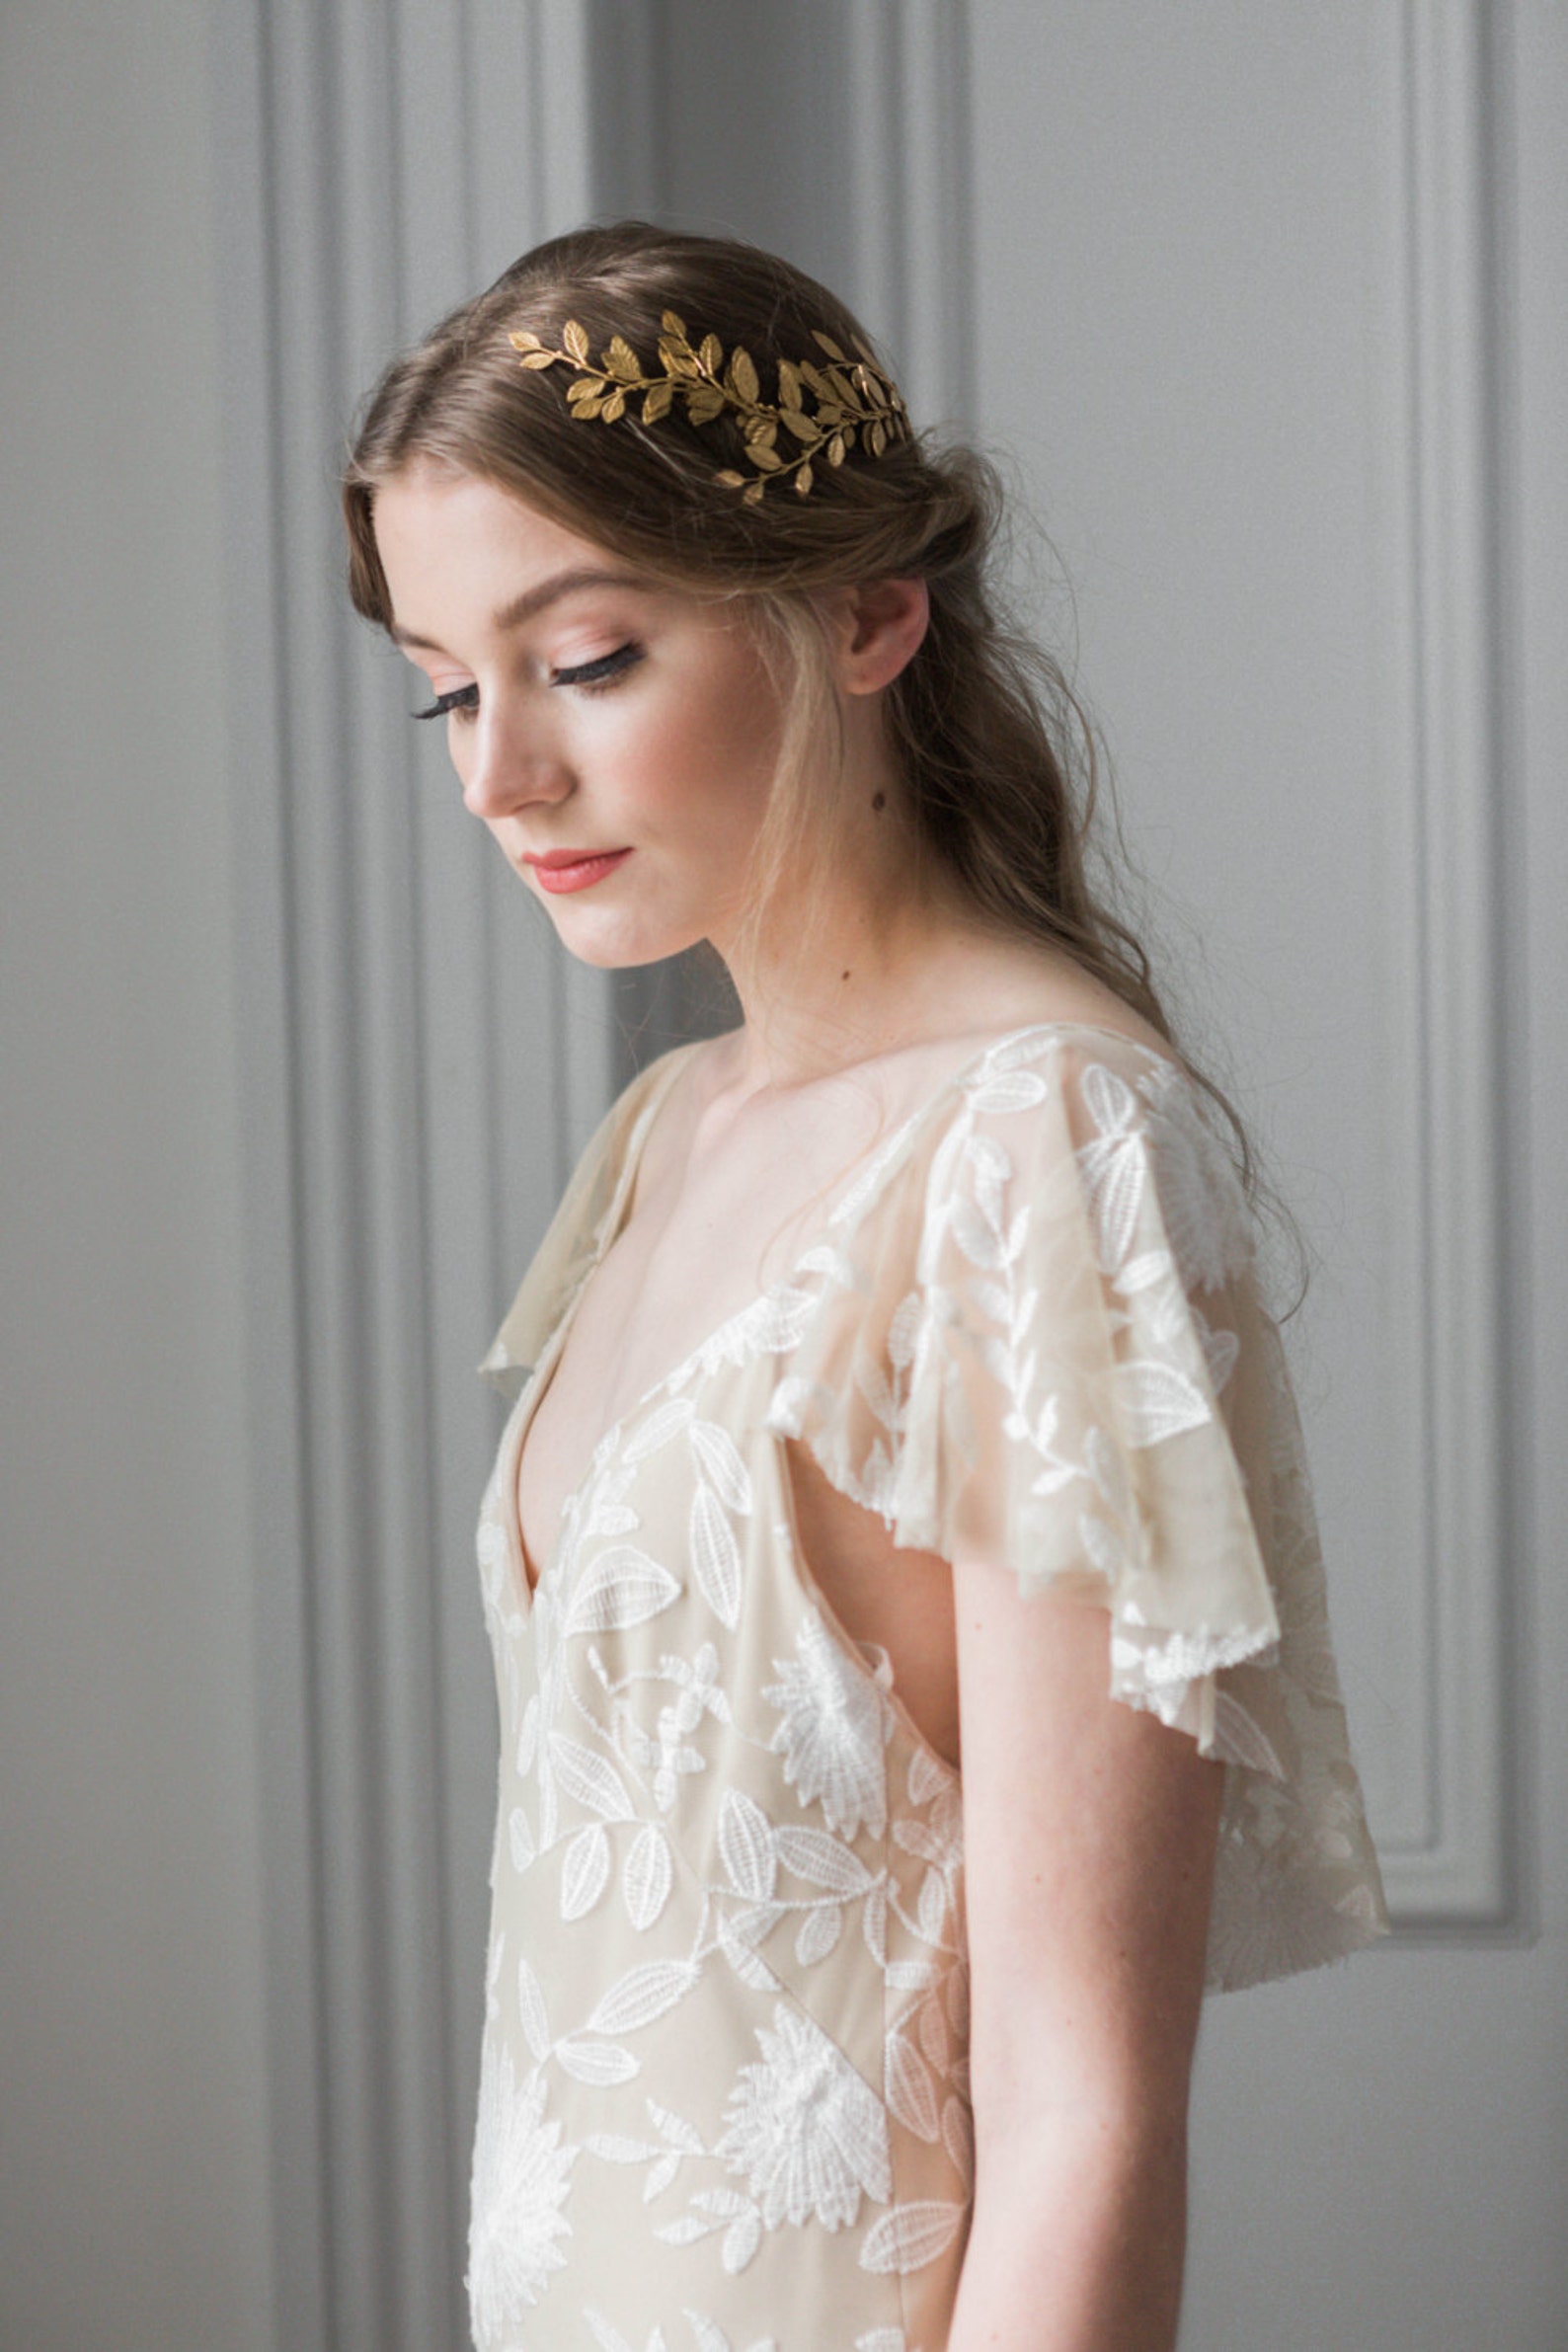 Alena Wrap Headpiece Gold Crown Bridal Headpiece Boho | Etsy